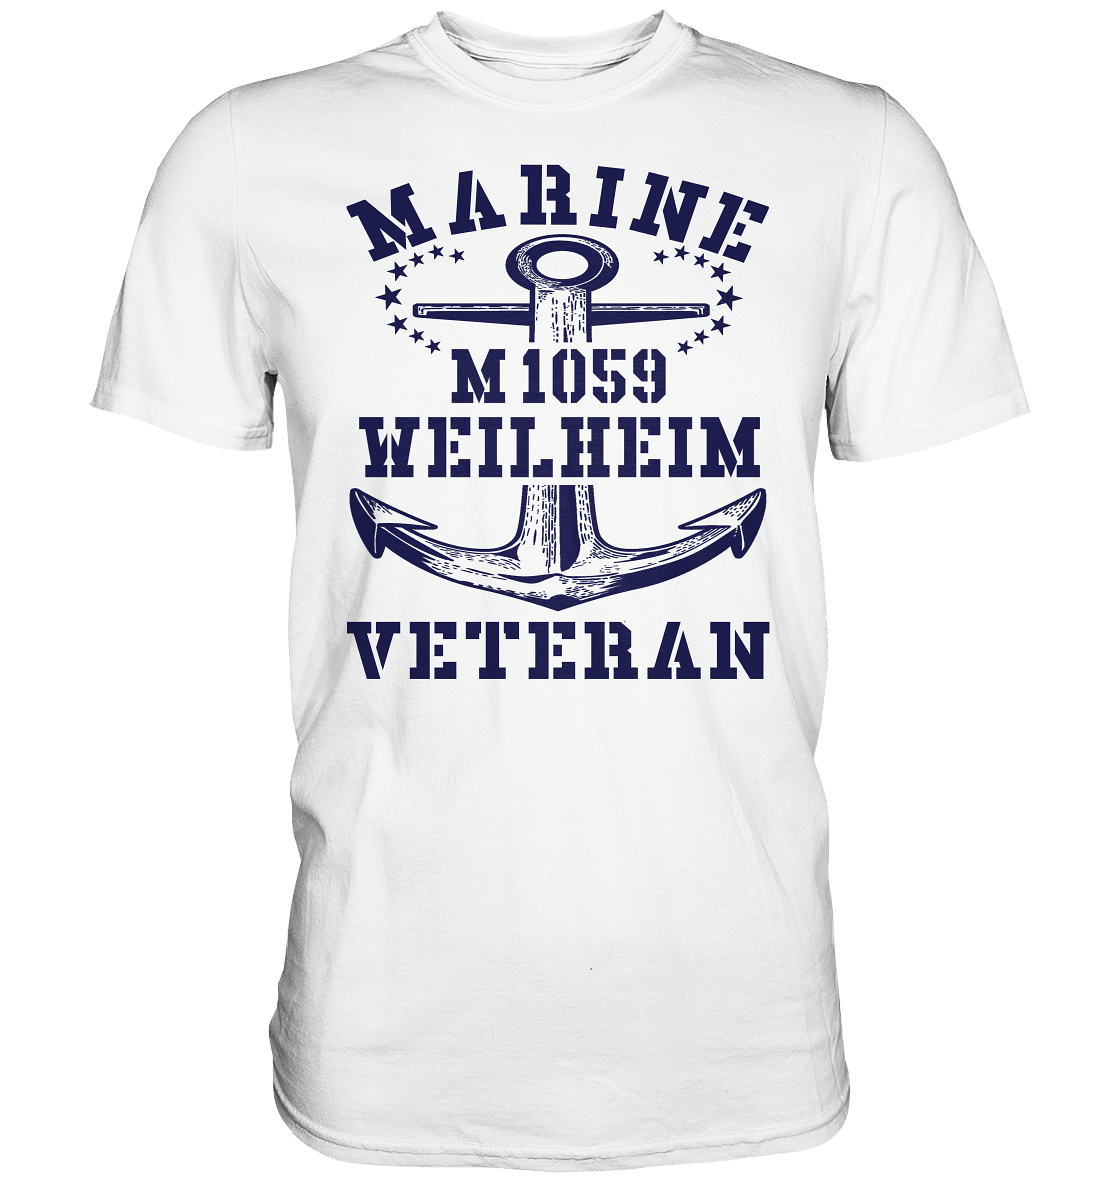 Mij.-Boot M1059 WEILHEIM Marine Veteran - Premium Shirt